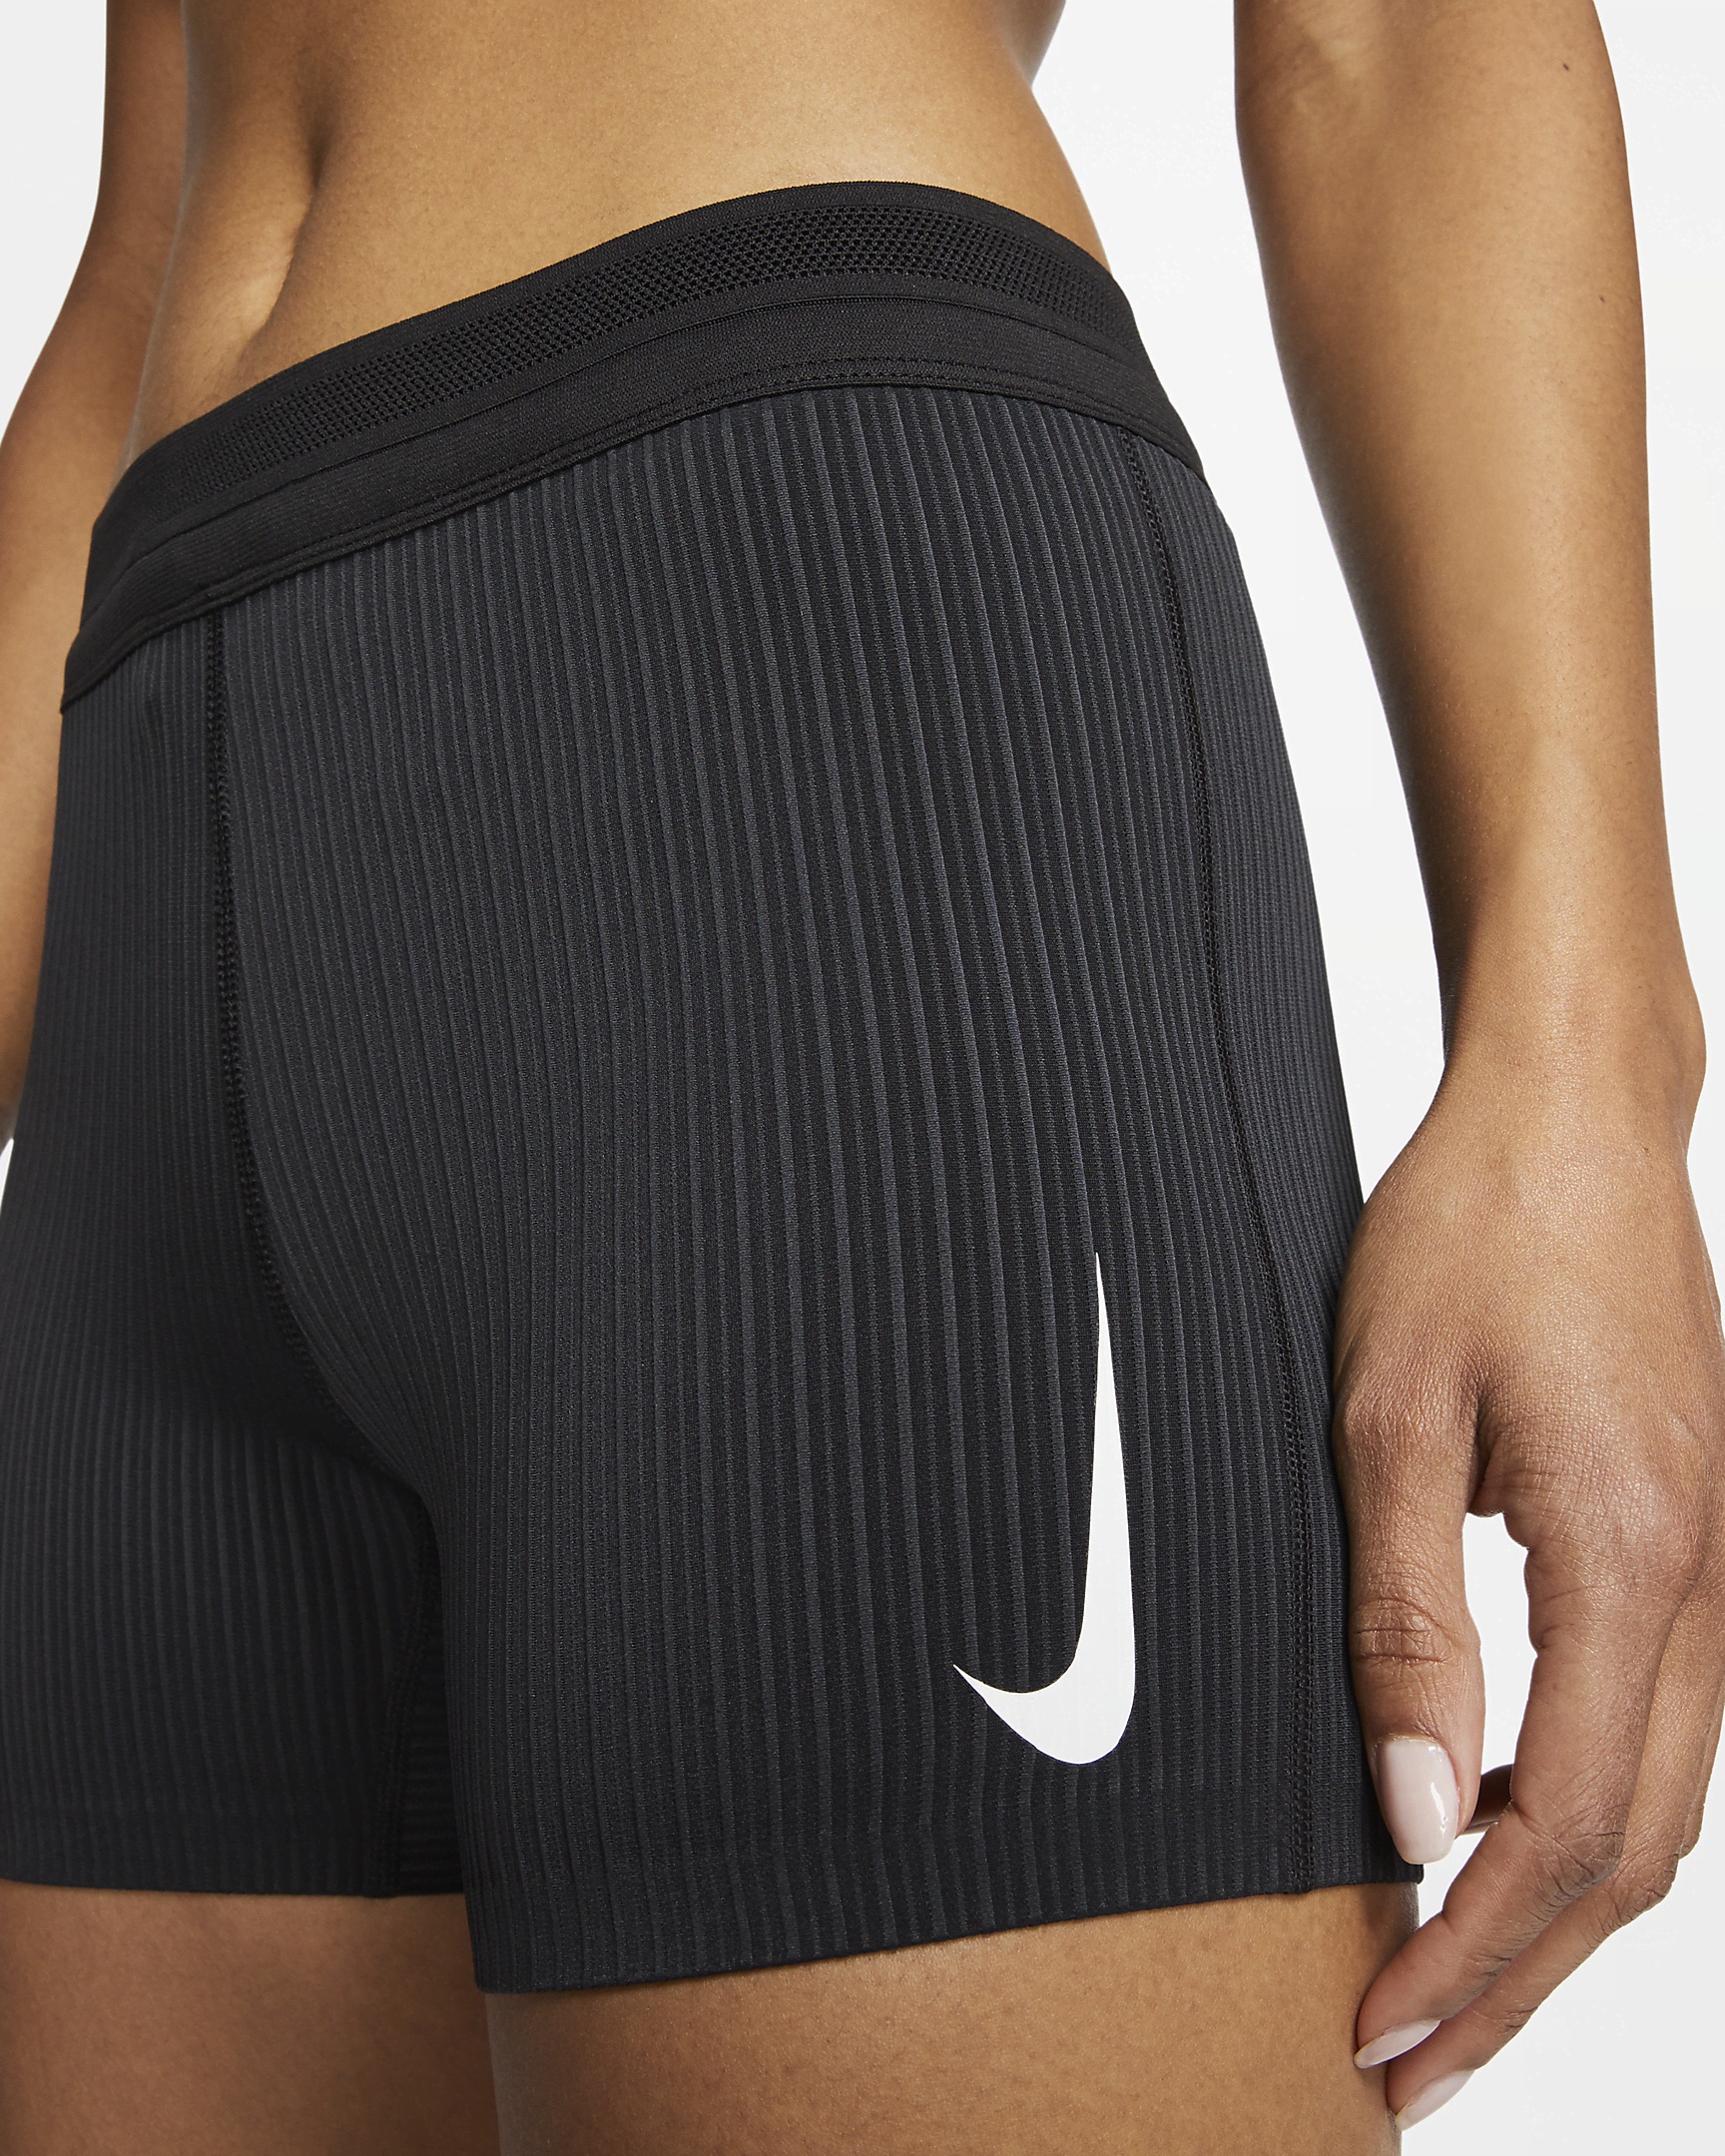 Nike Women's Dri-FIT ADV Tight Running Shorts - 6